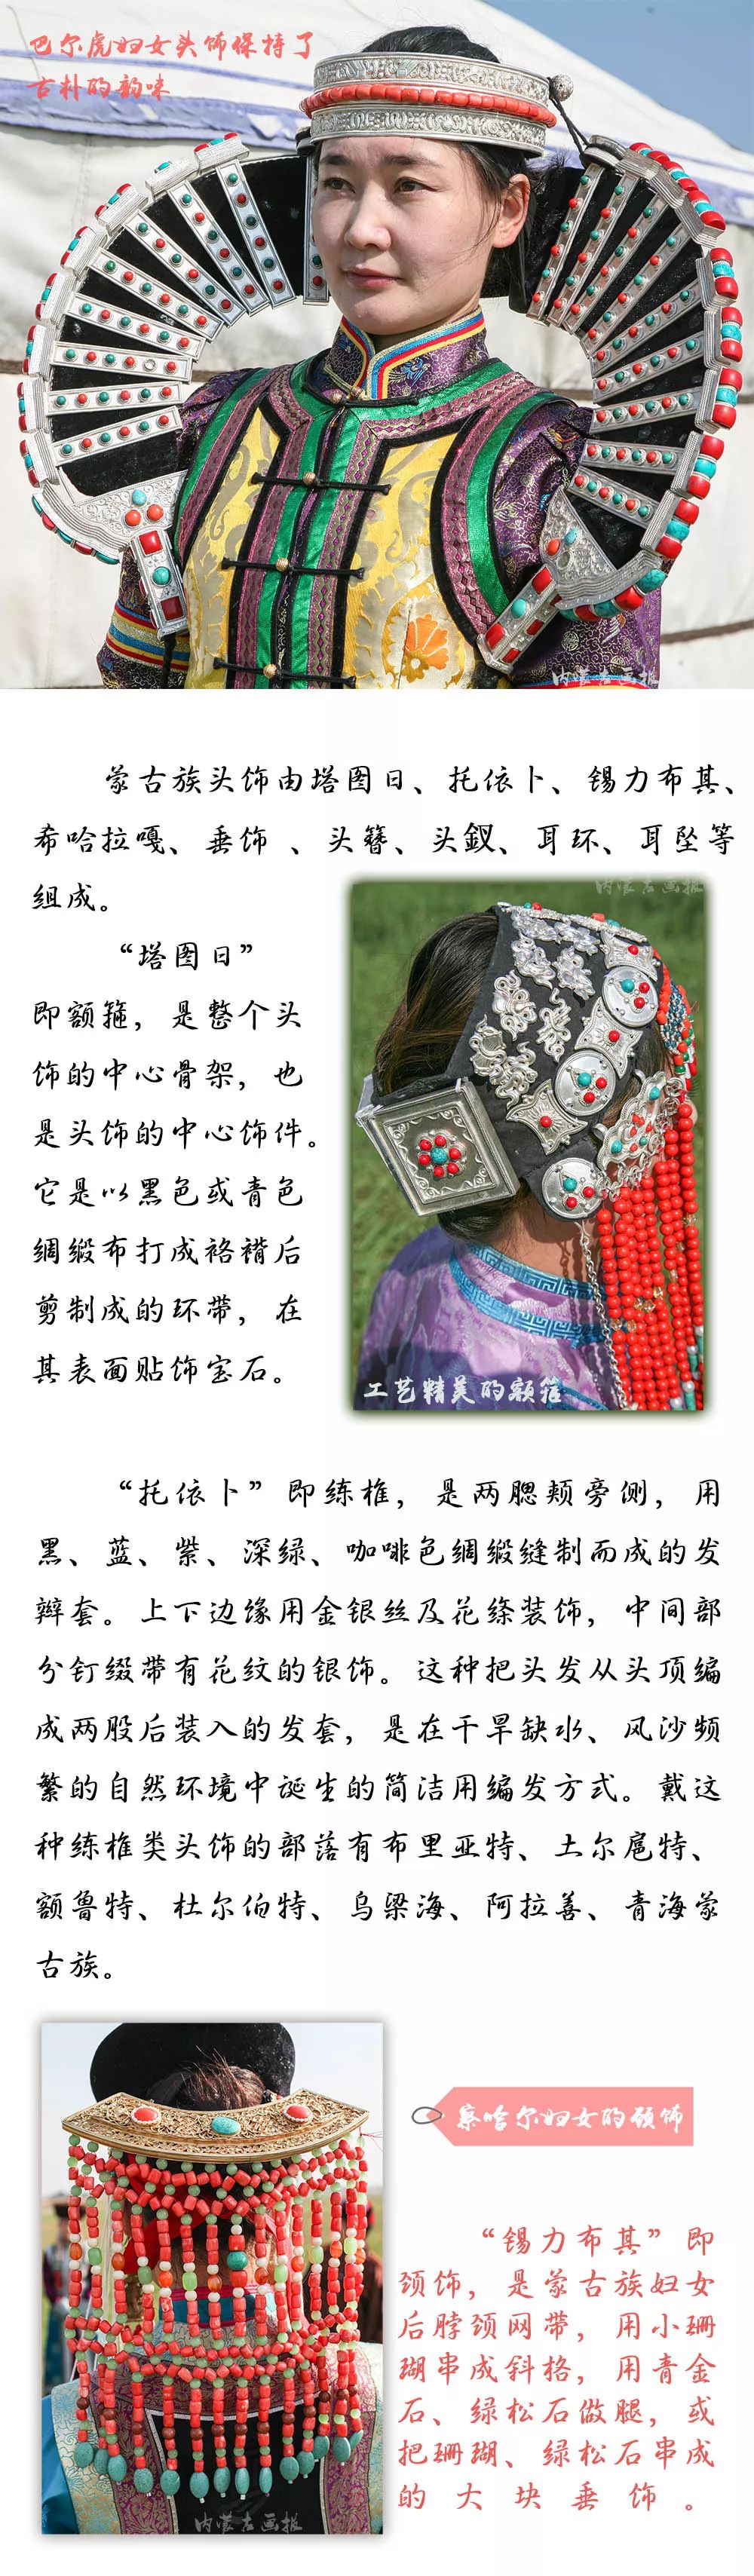 装点世界的蒙古族佩饰 | 女士篇 第9张